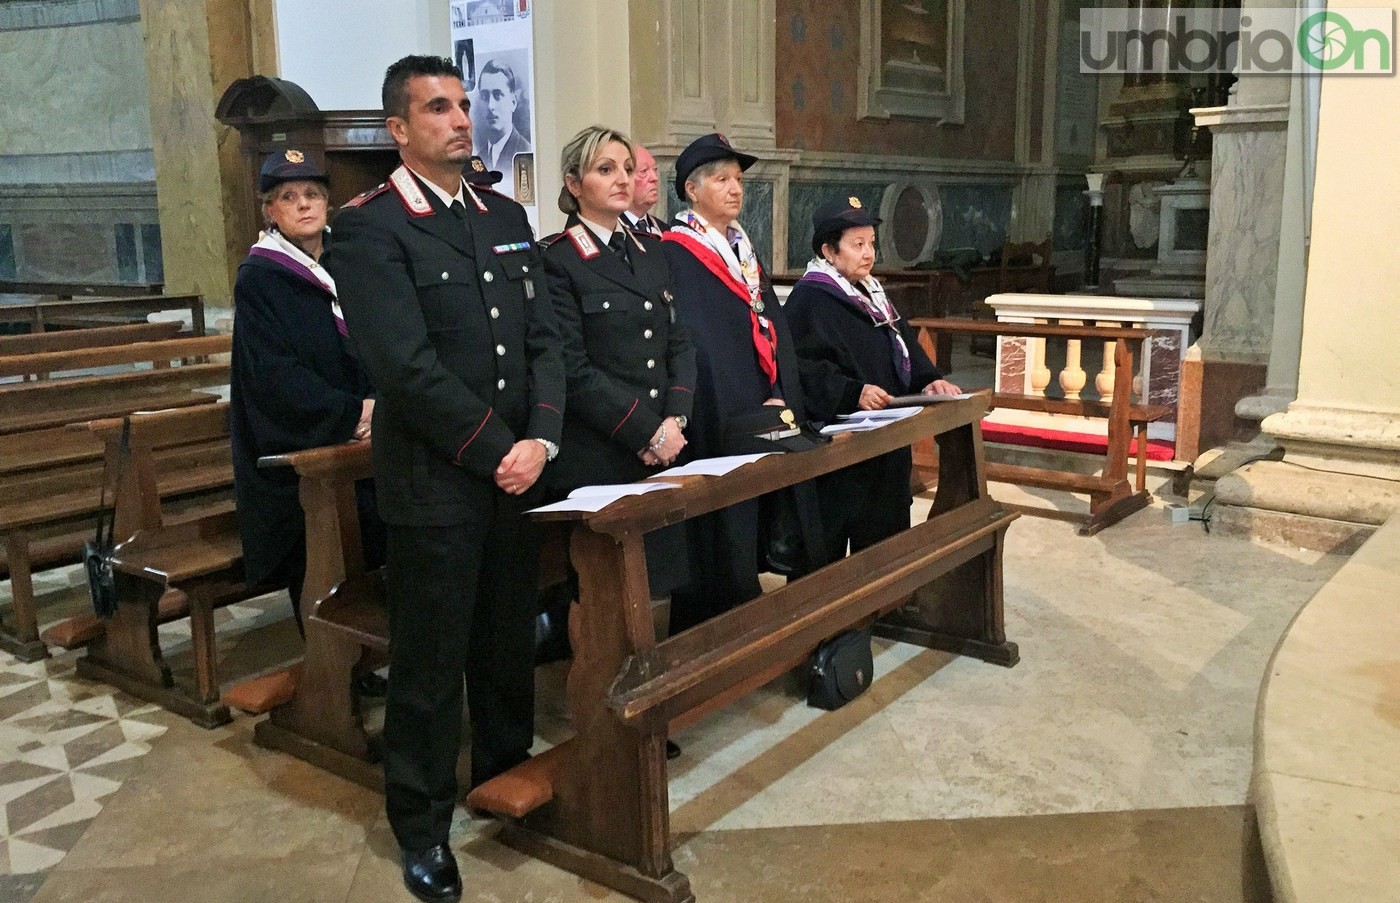 Virgo-Fidelis-carabinieri-Terni-in-cattedrale-21-novembre-2016-9